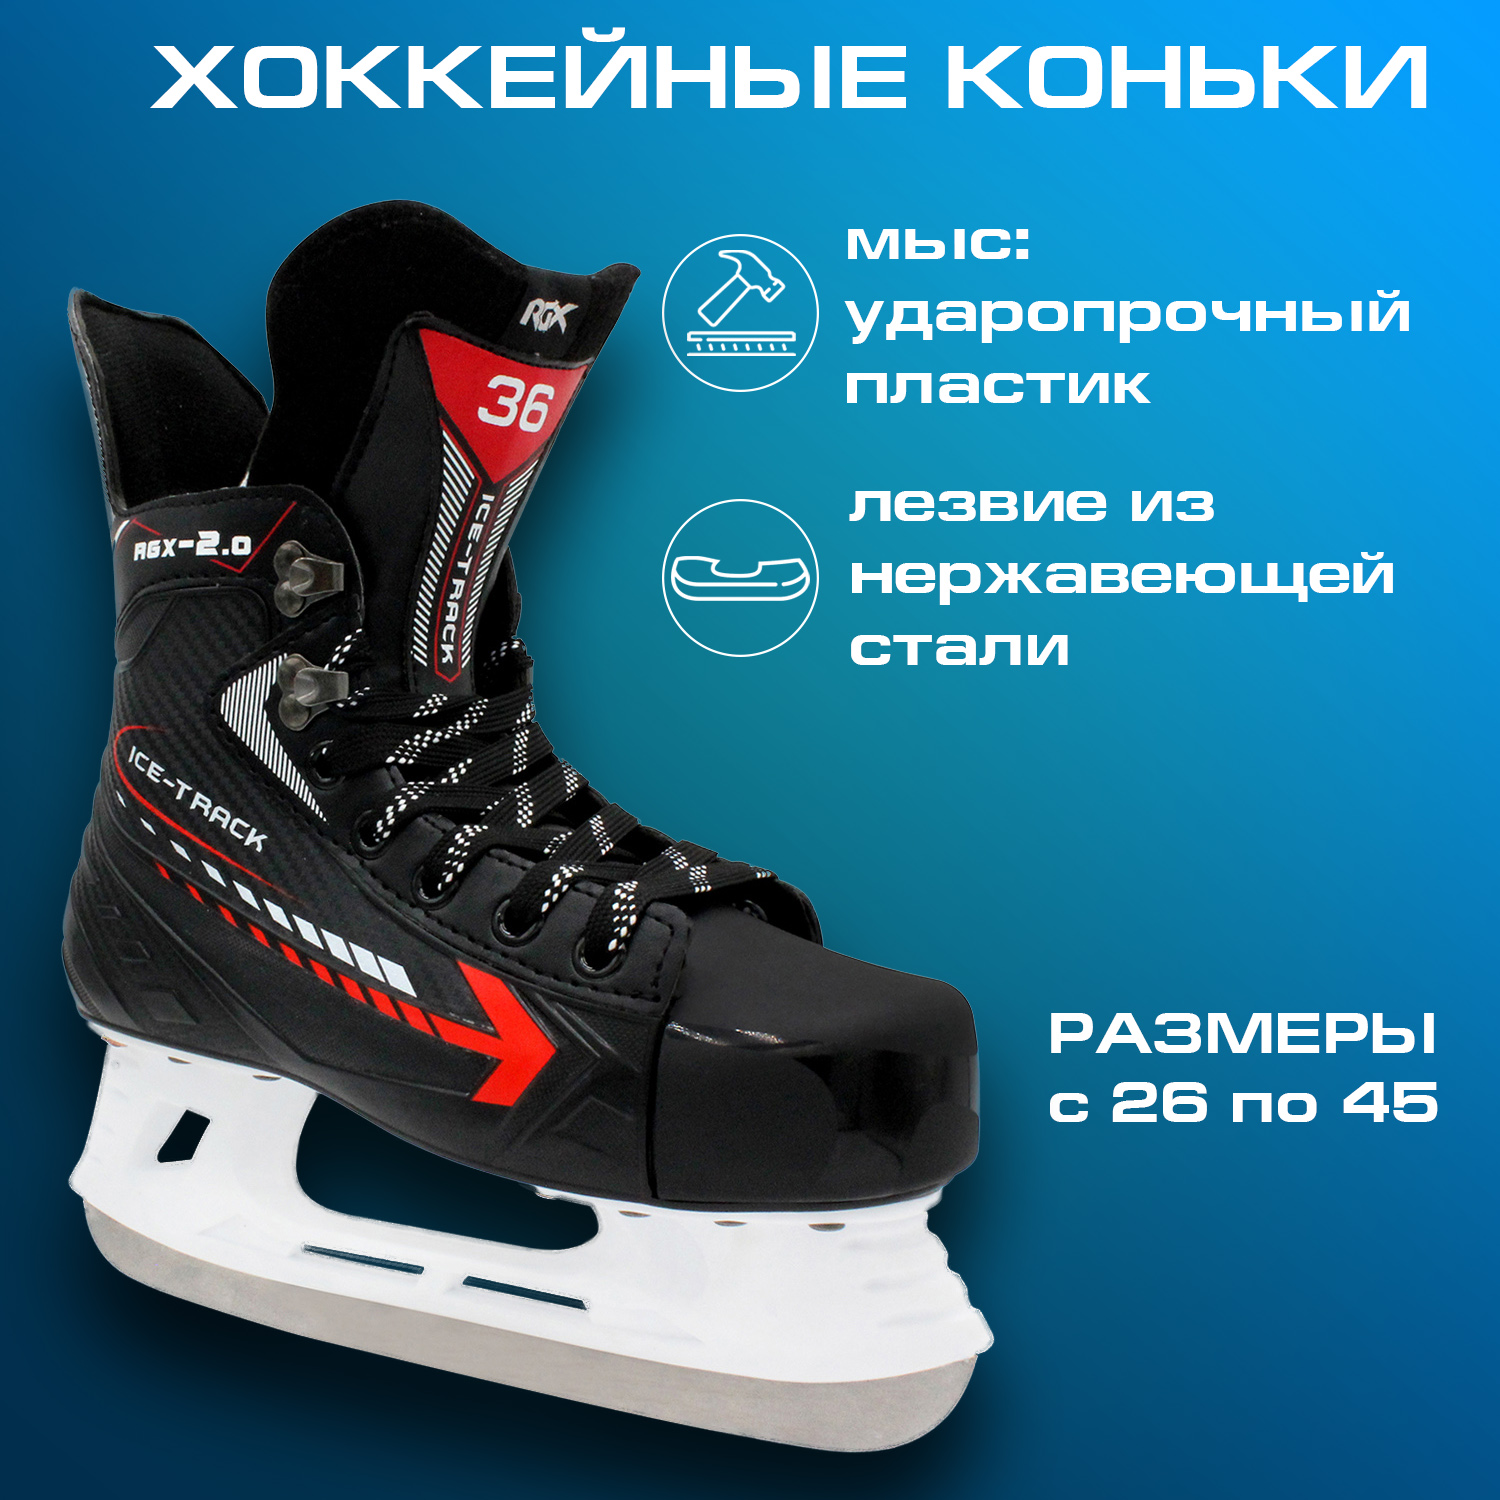 Коньки хоккейные RGX RGX 2.0 Black 39